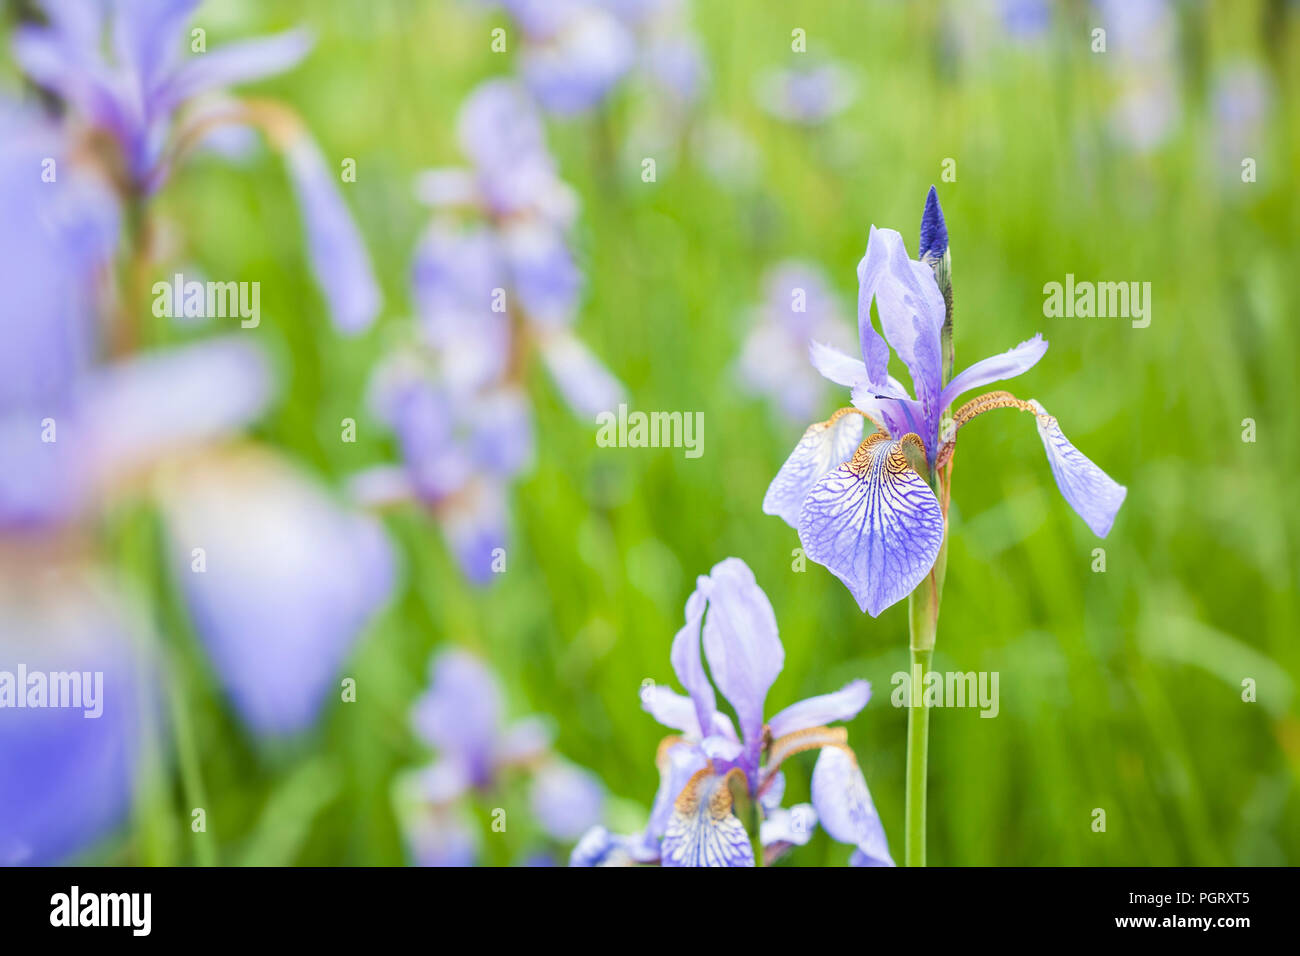 Close-up of Iris sibirica, nom commun ou du pavillon de Sibérie Iris de Sibérie, avec un fond vert. Banque D'Images